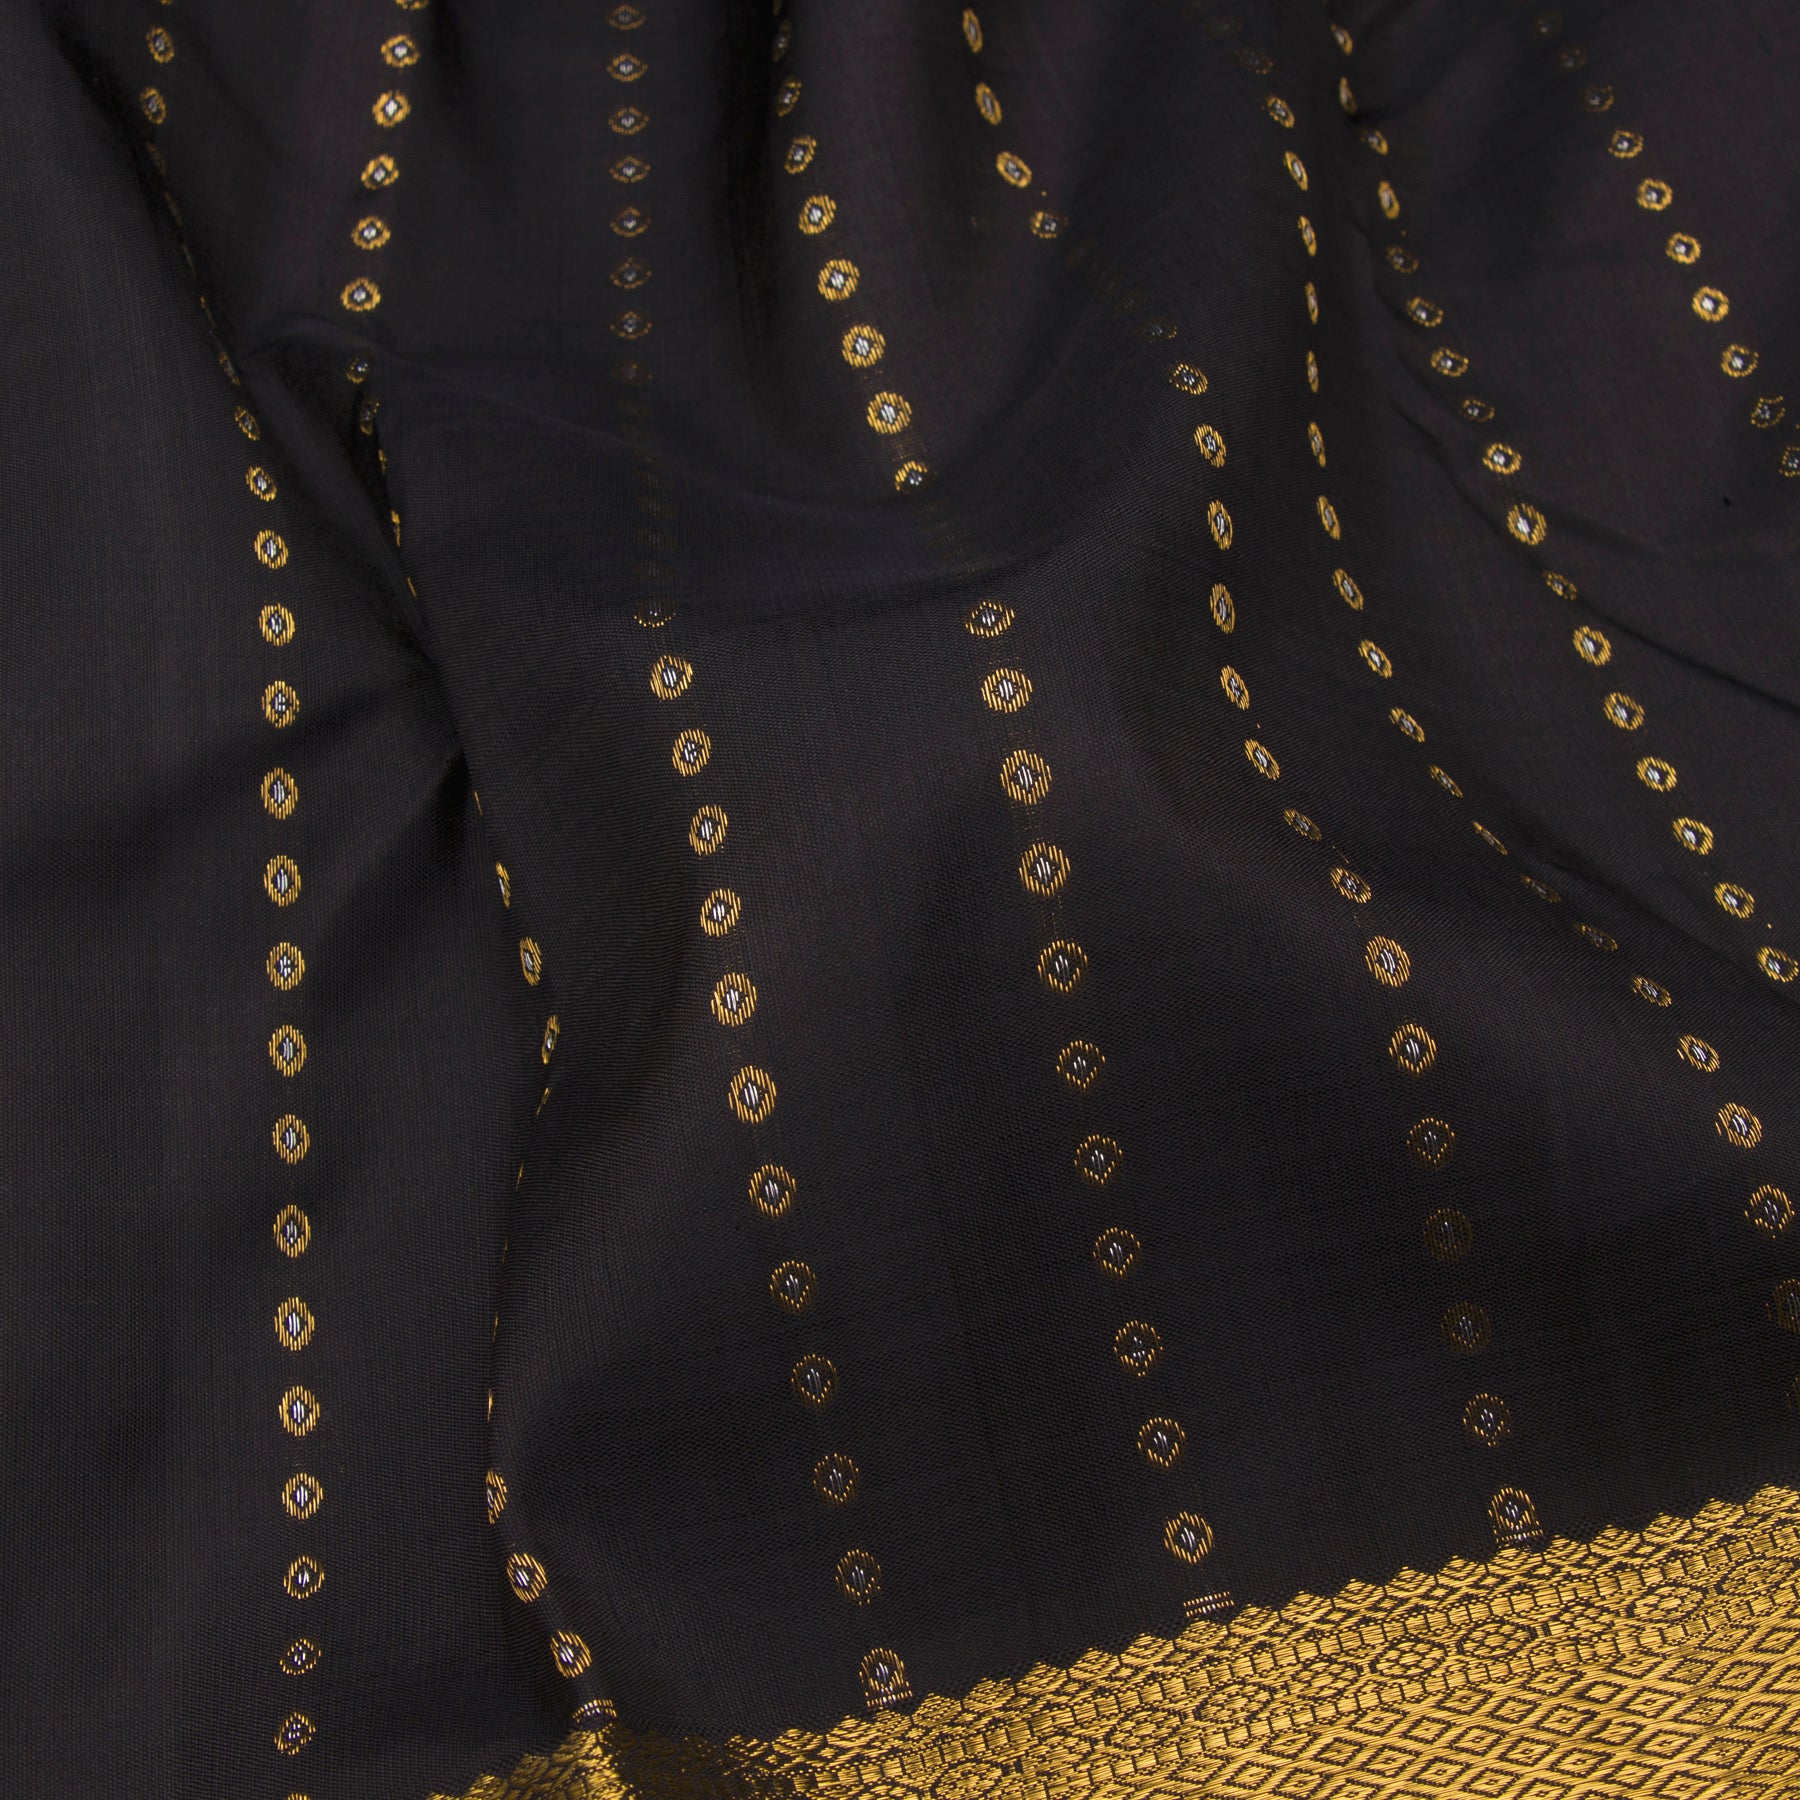 Kanakavalli Kanjivaram Silk Sari 23-611-HS001-11888 - Fabric View